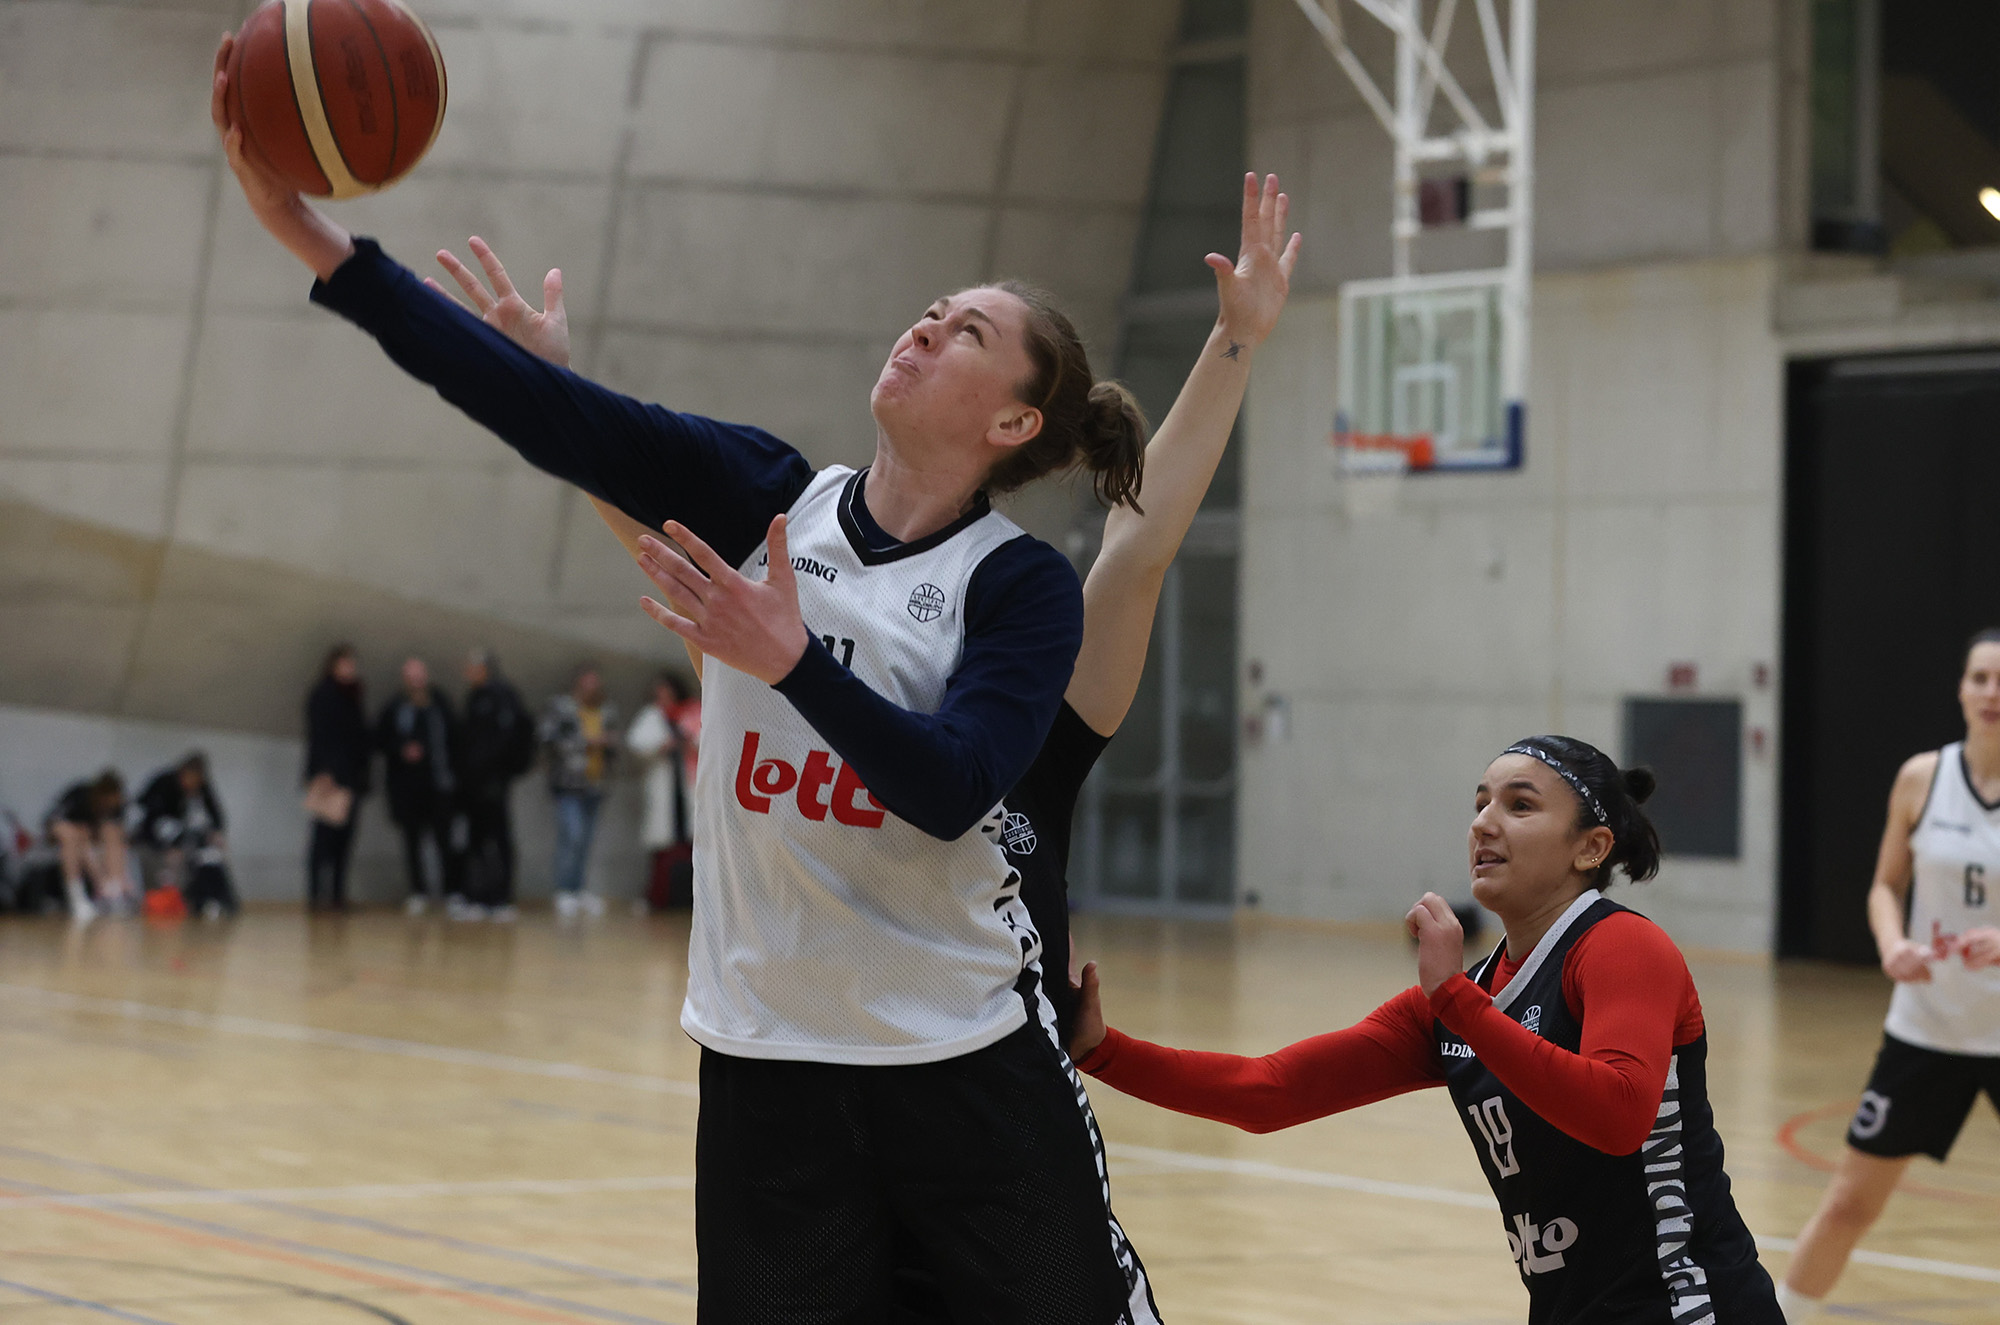 Basketballerin Emma Meesseman während eines Trainings (Bild: Virginie Lefour/Belga)